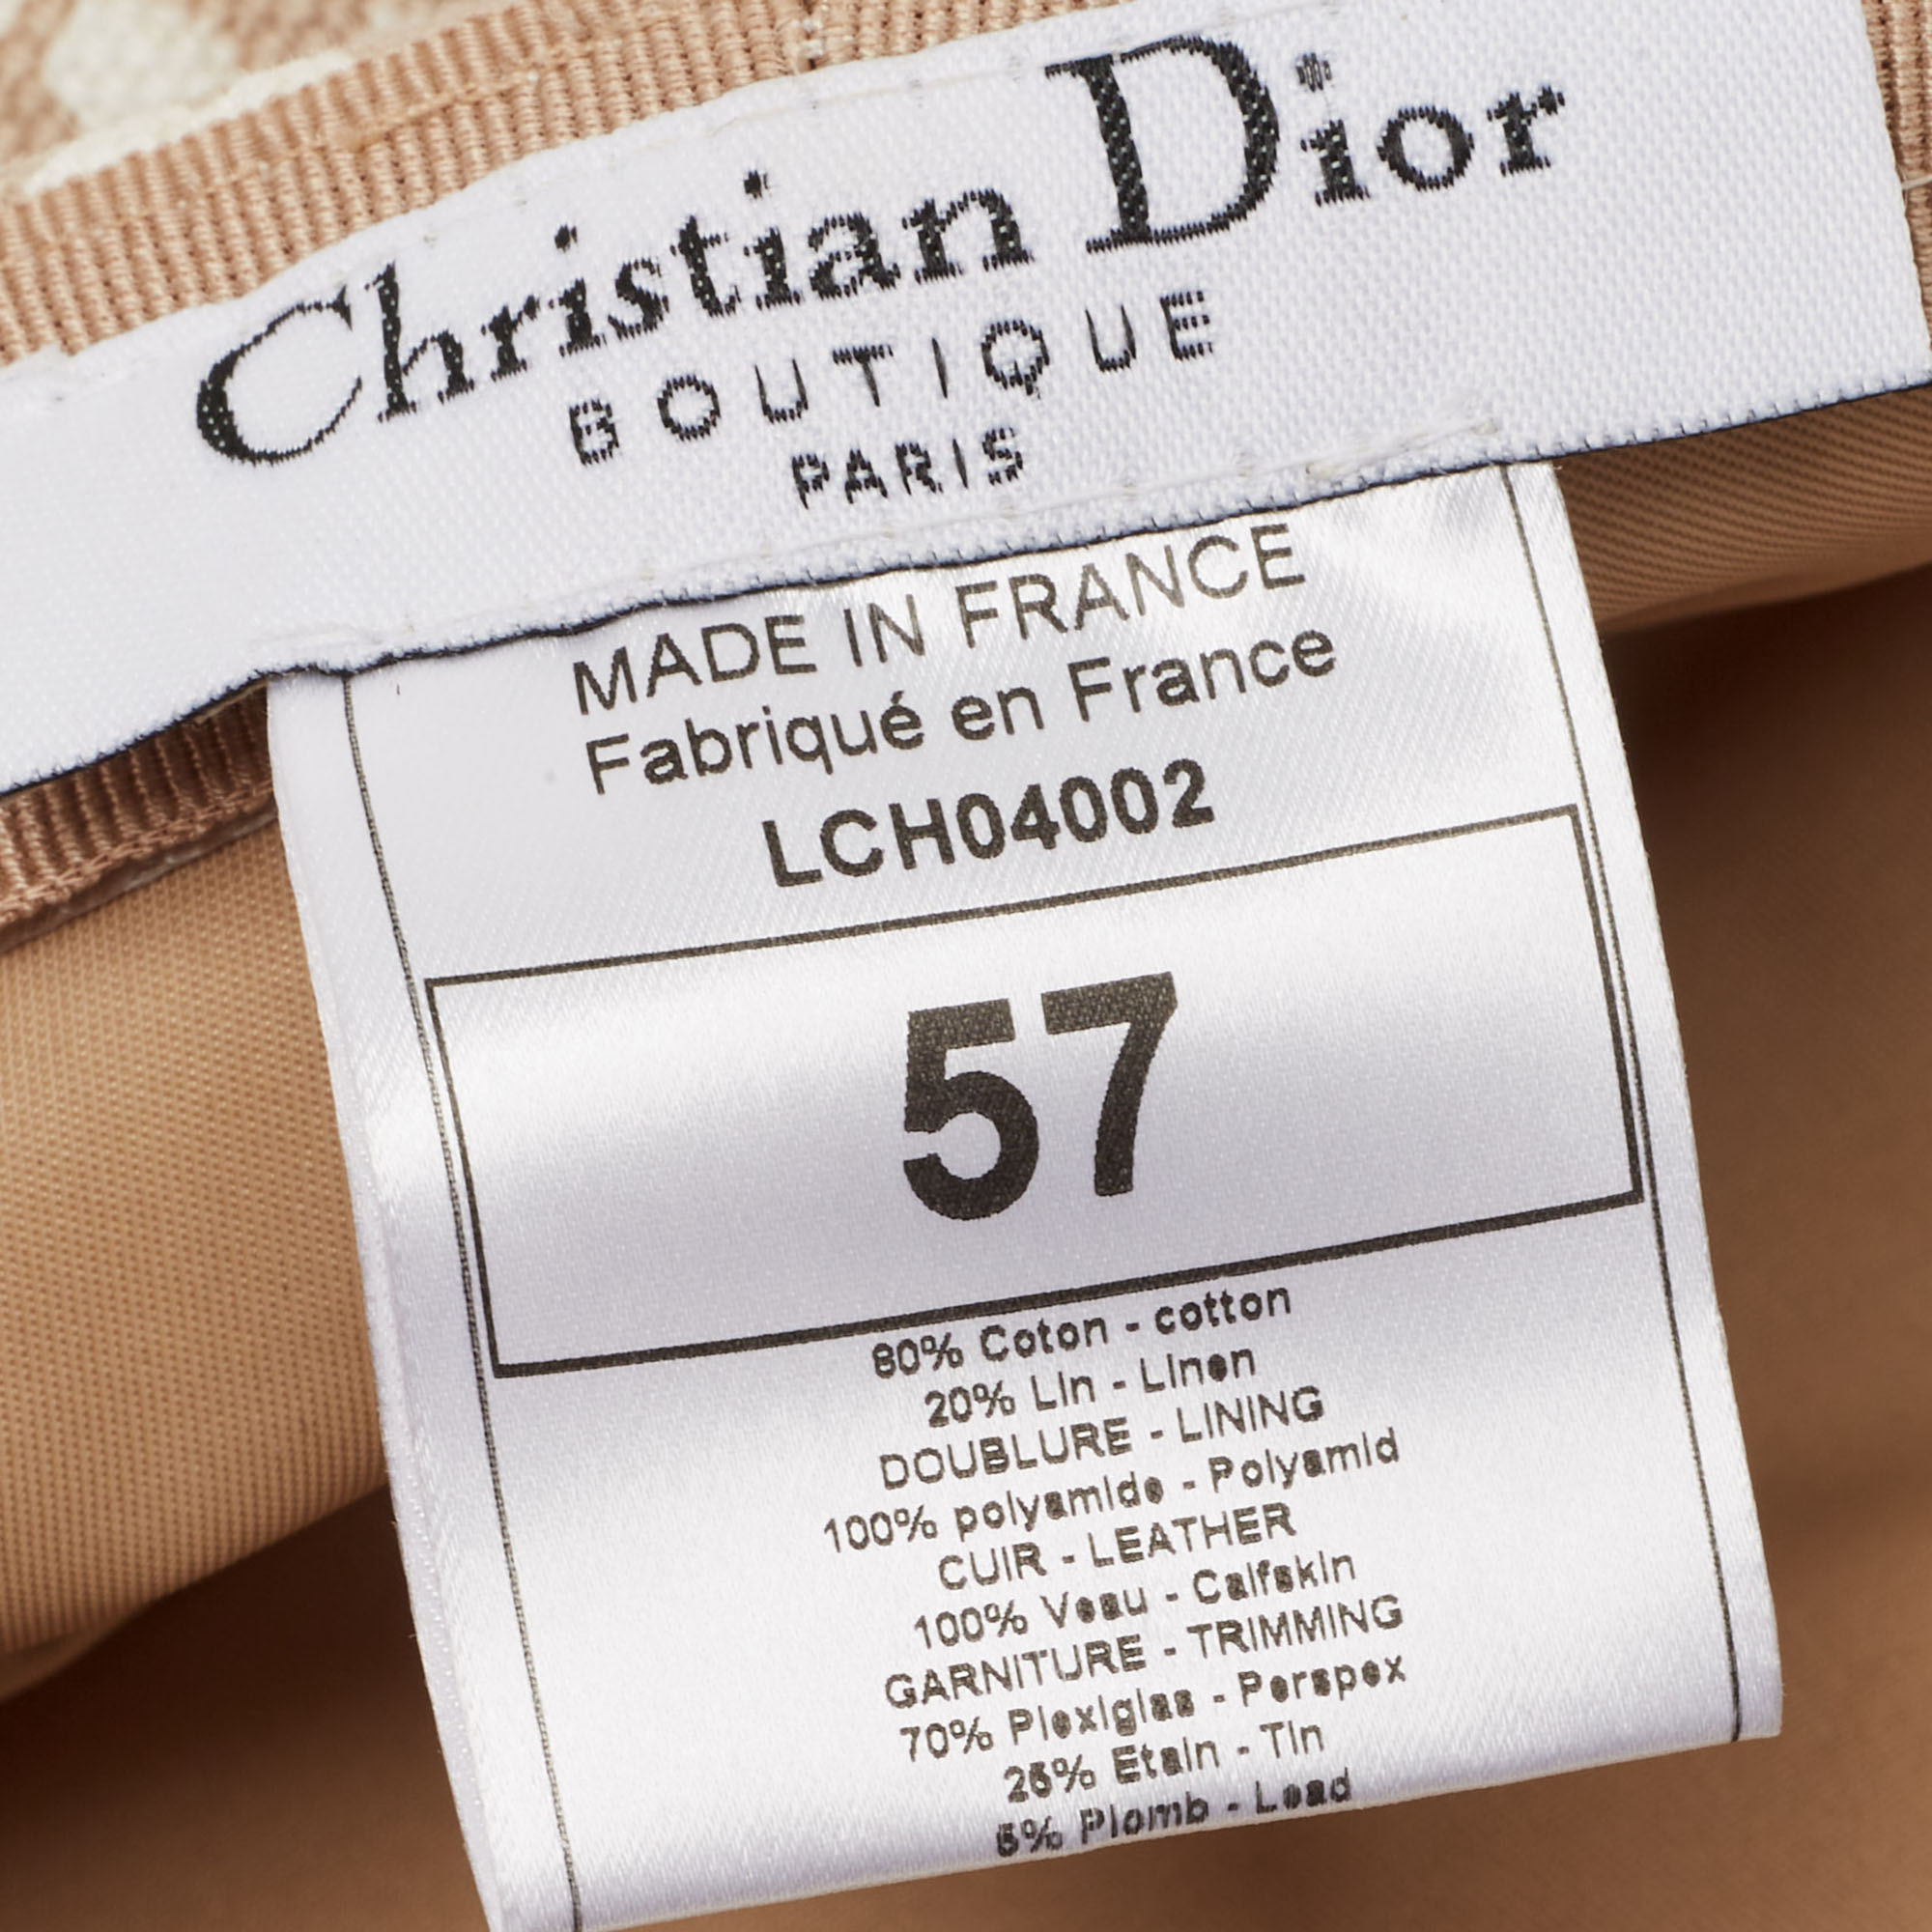 Dior Vintage Beige Diorissimo Cotton Charms Embellished Paper Boy Beret Hat